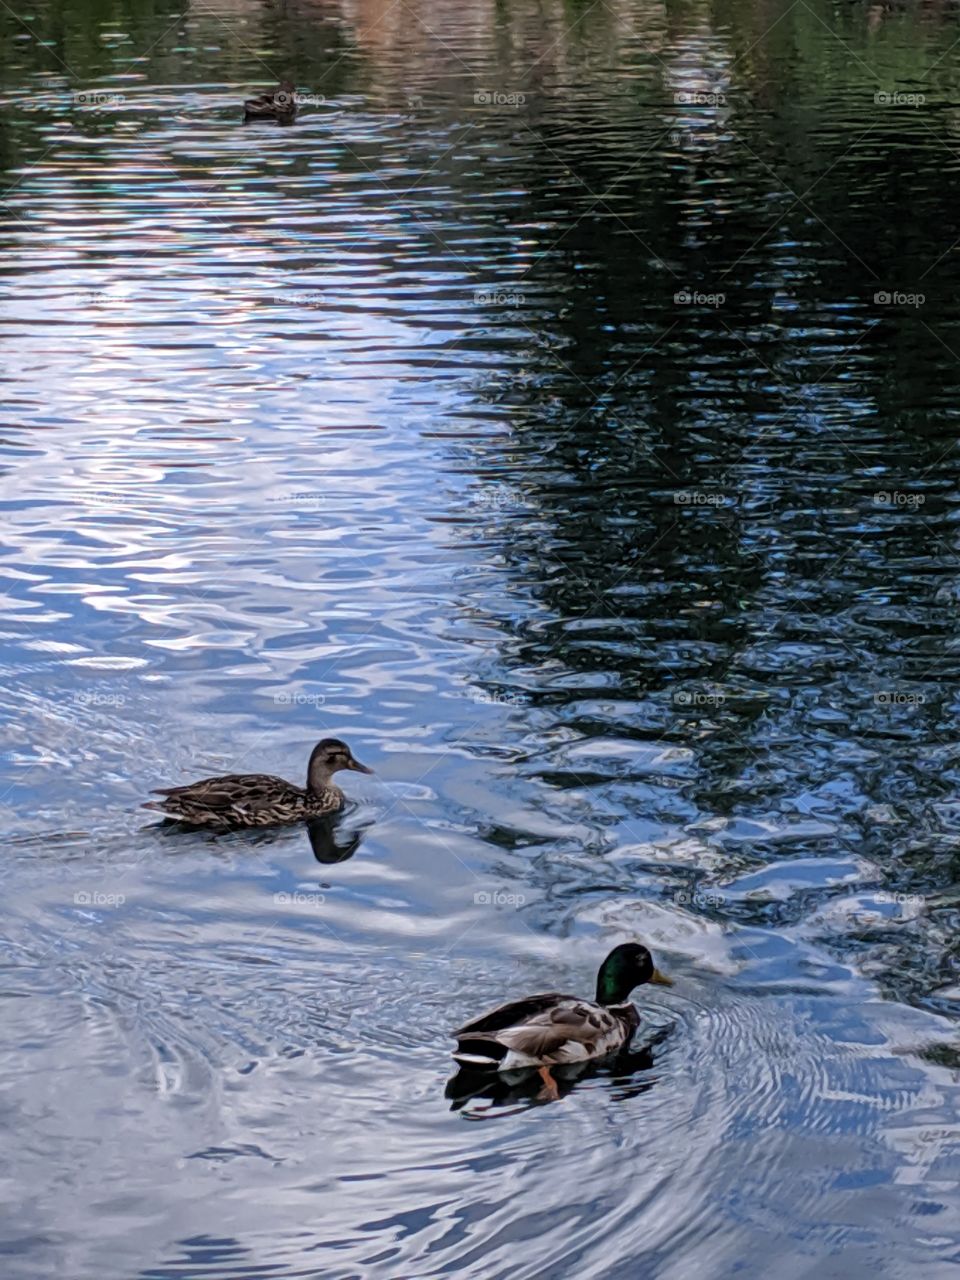 Ducks in Sun Valley, Idaho